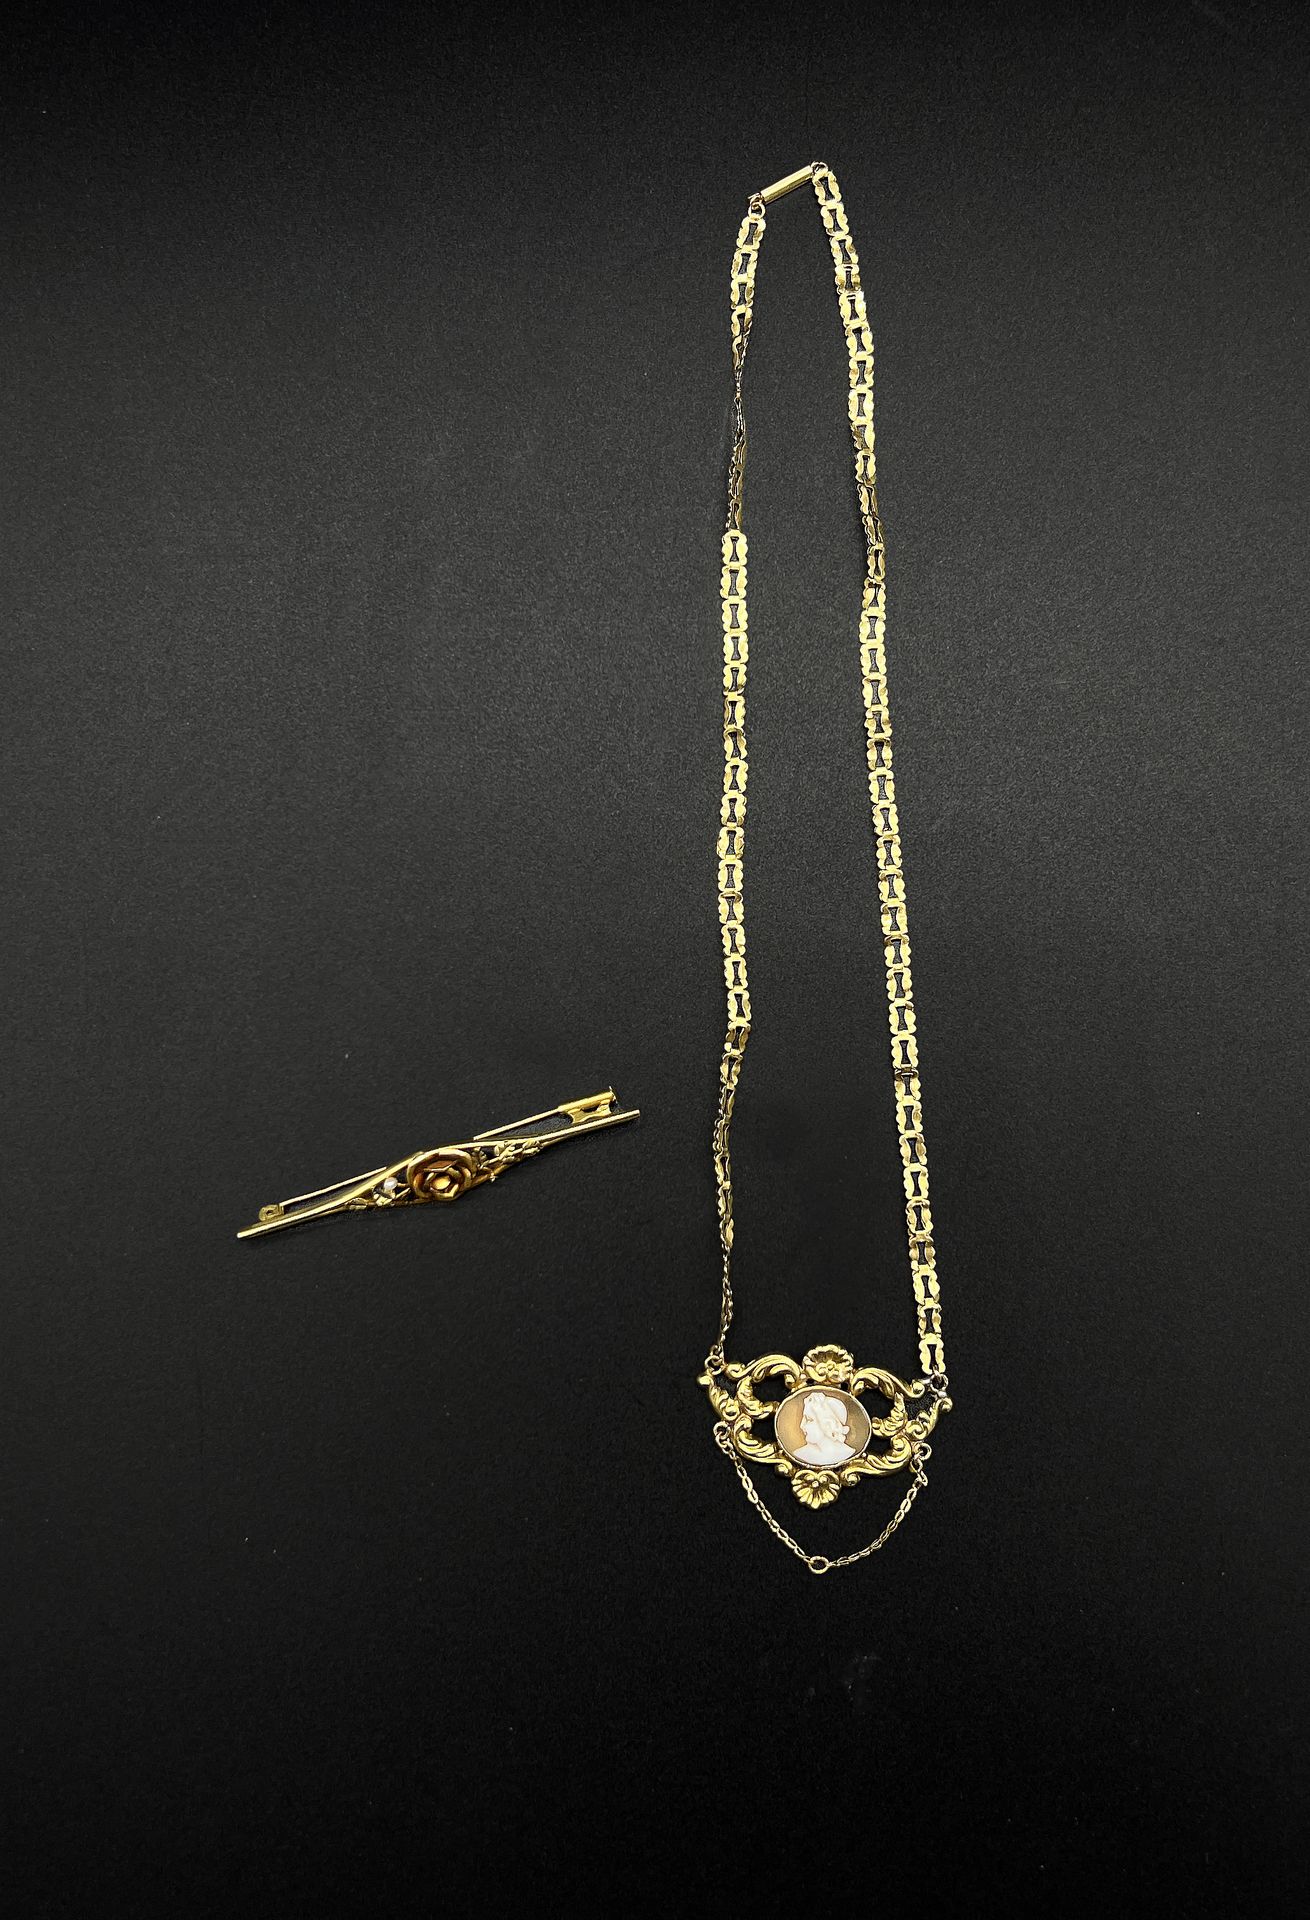 Null Un lote de joyas de oro amarillo (750) compuesto por :

- Collar con motivo&hellip;